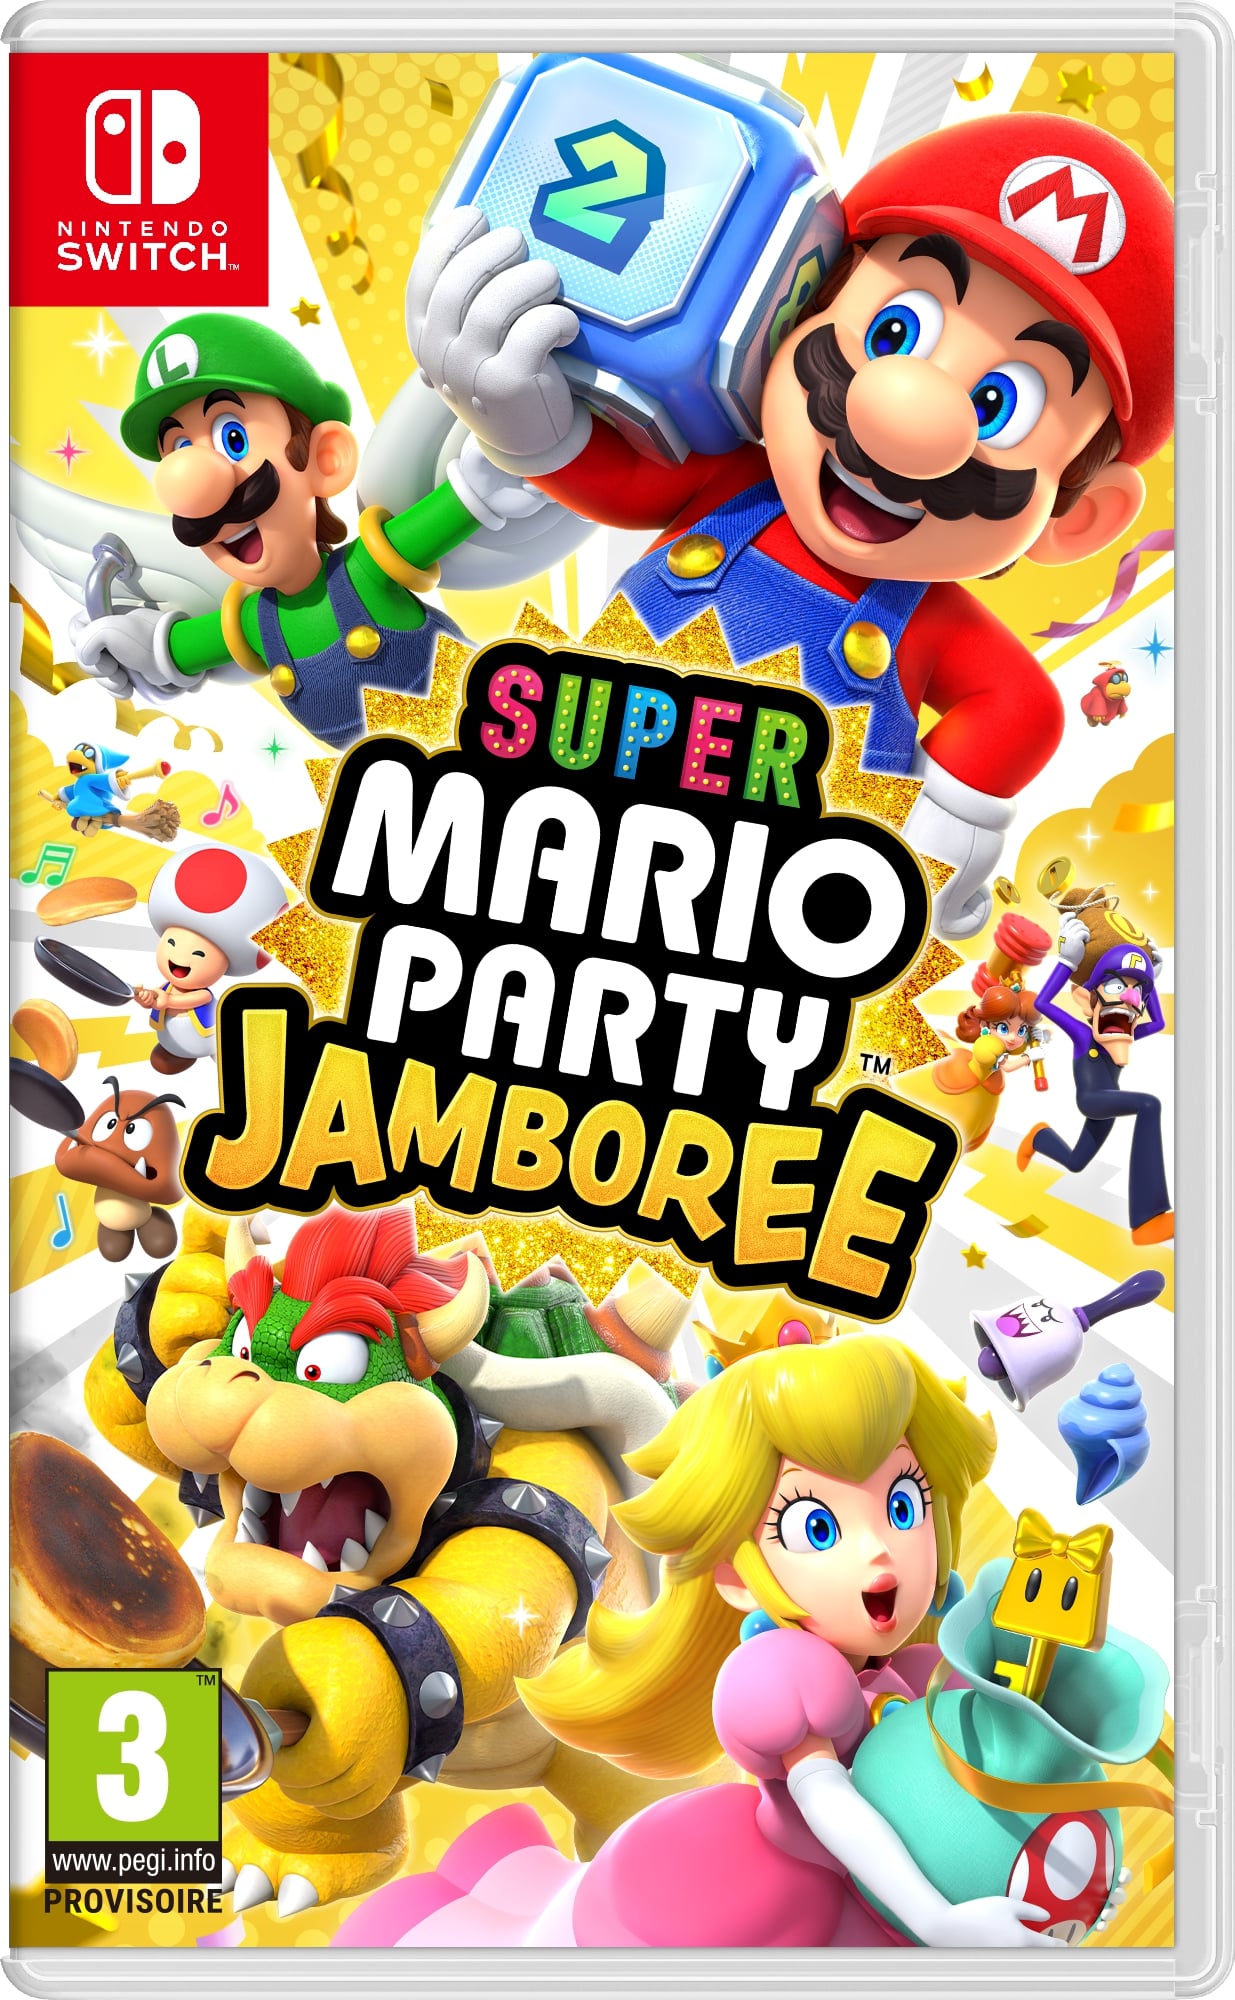 Jaquette super mario party jamboree 1